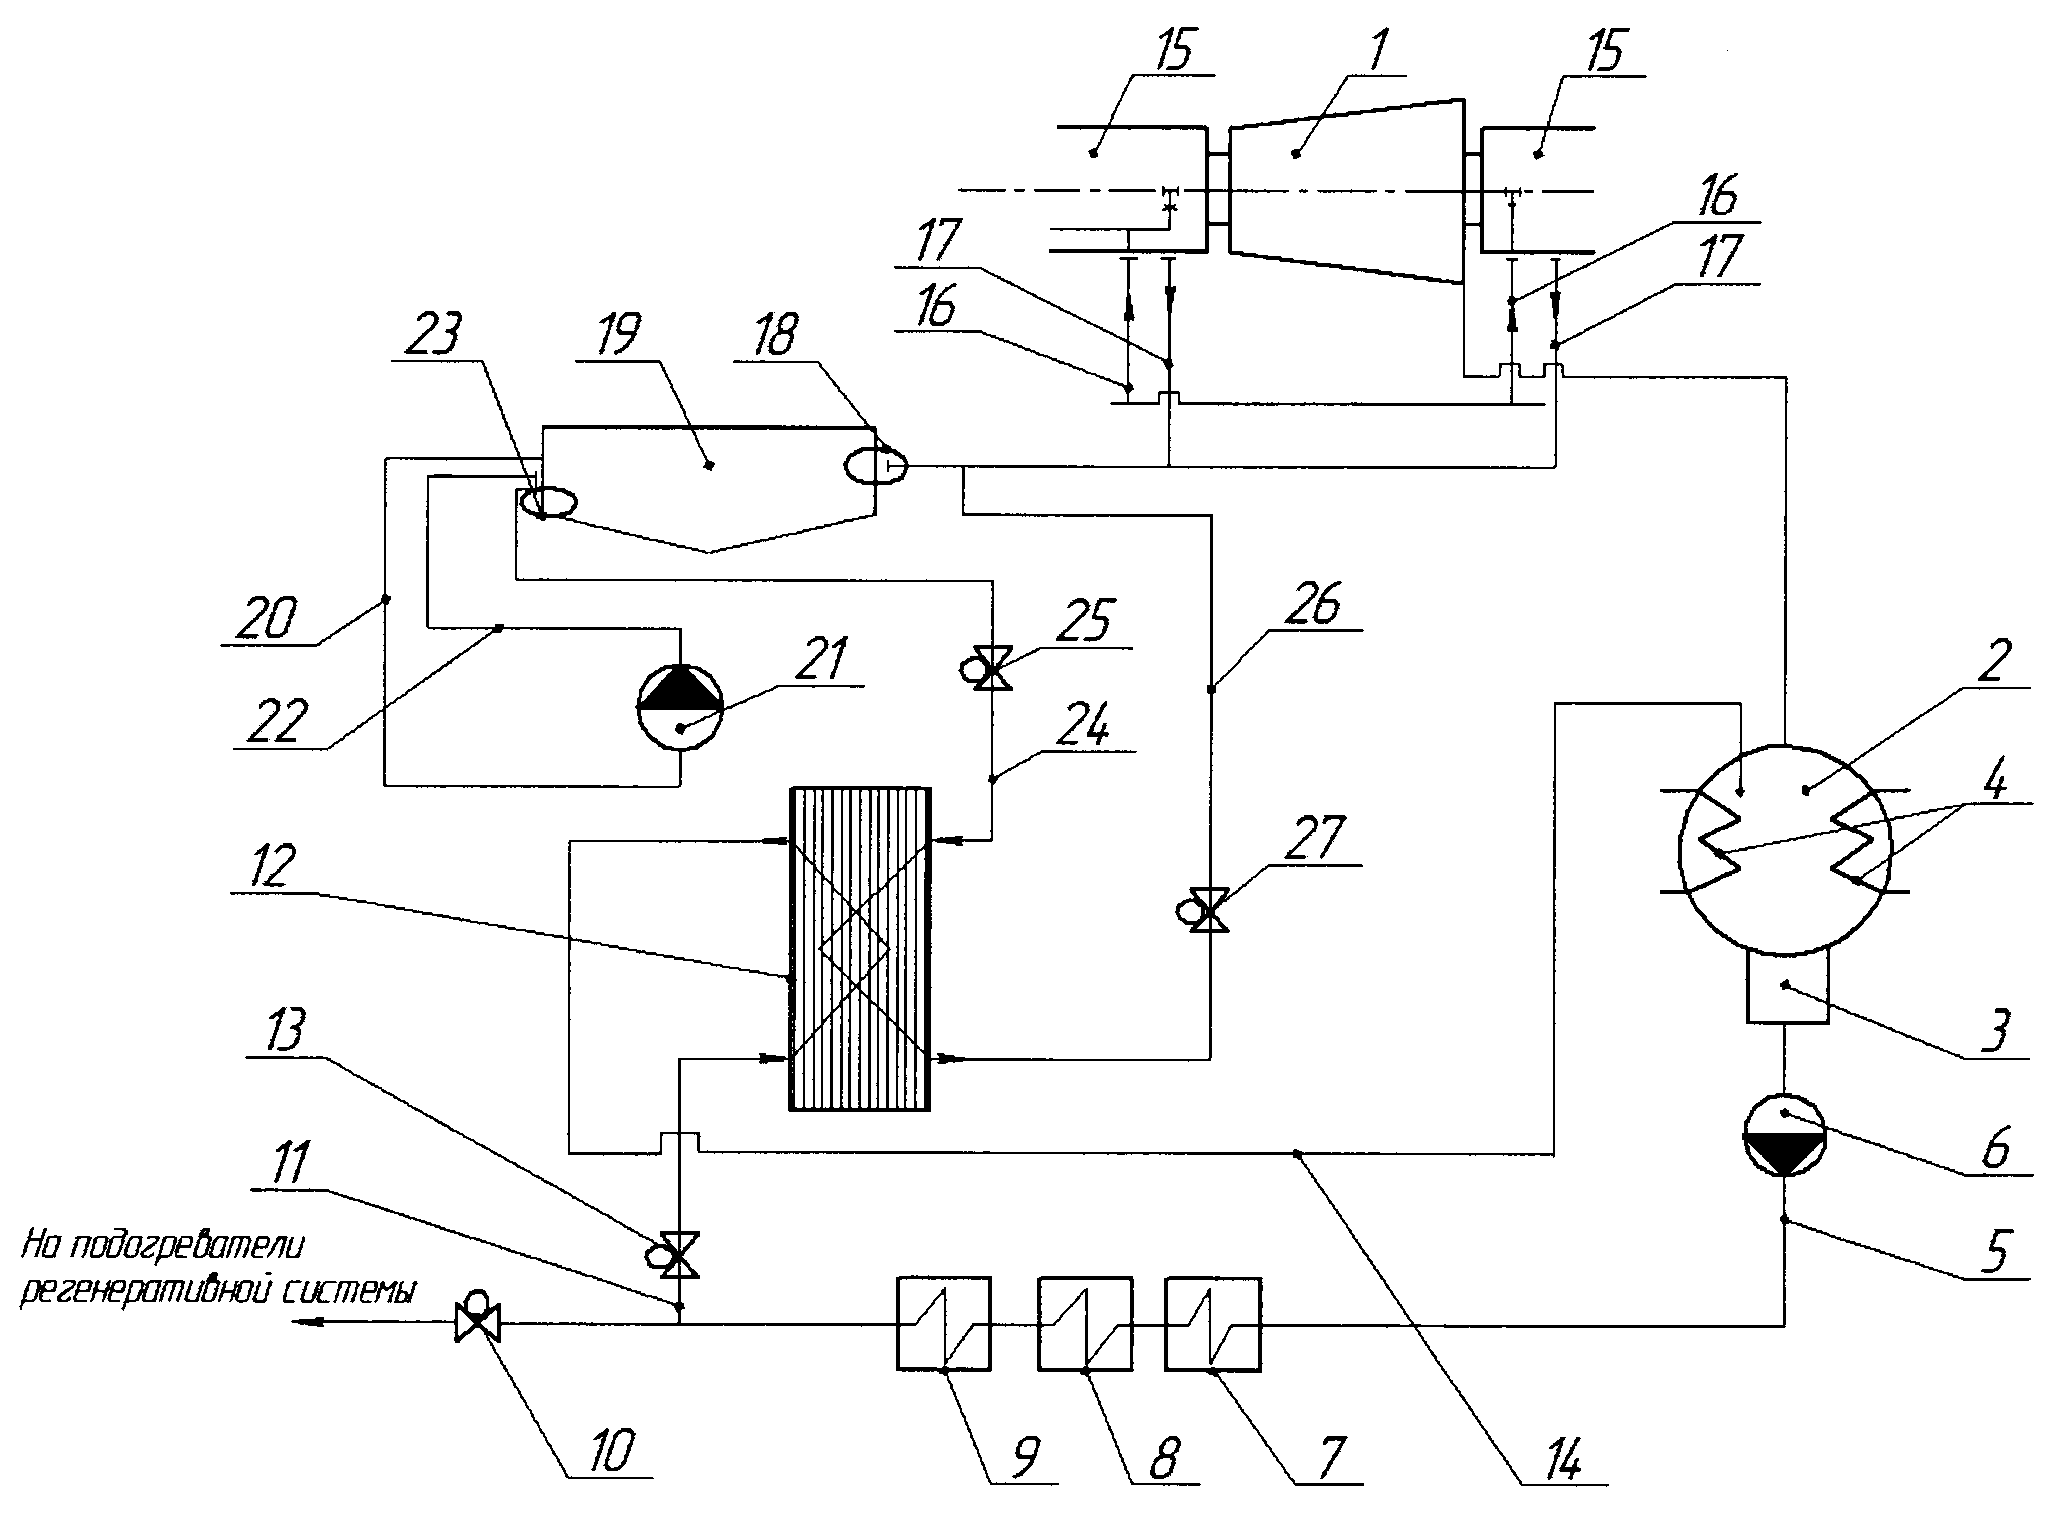 Паротурбинная установка с системой рециркуляции основного конденсата и системой смазки